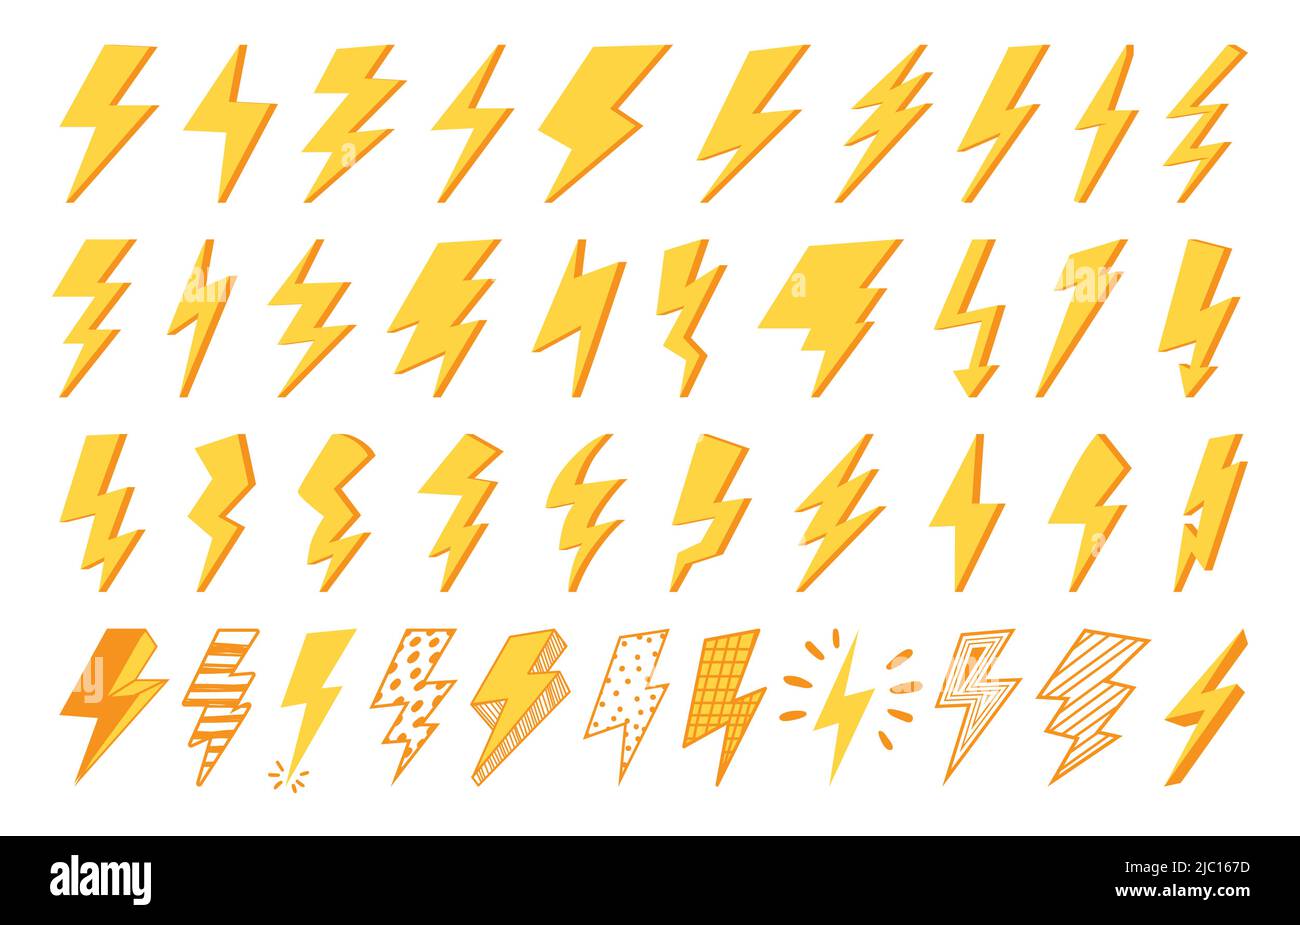 Blinkdes Symbols. Blitzschlag Clipart Symbol, Strom und Strom-Logo, Natur Thunderbolt gelbe Form. Vektor isoliertes Gewitterlicht Stock Vektor